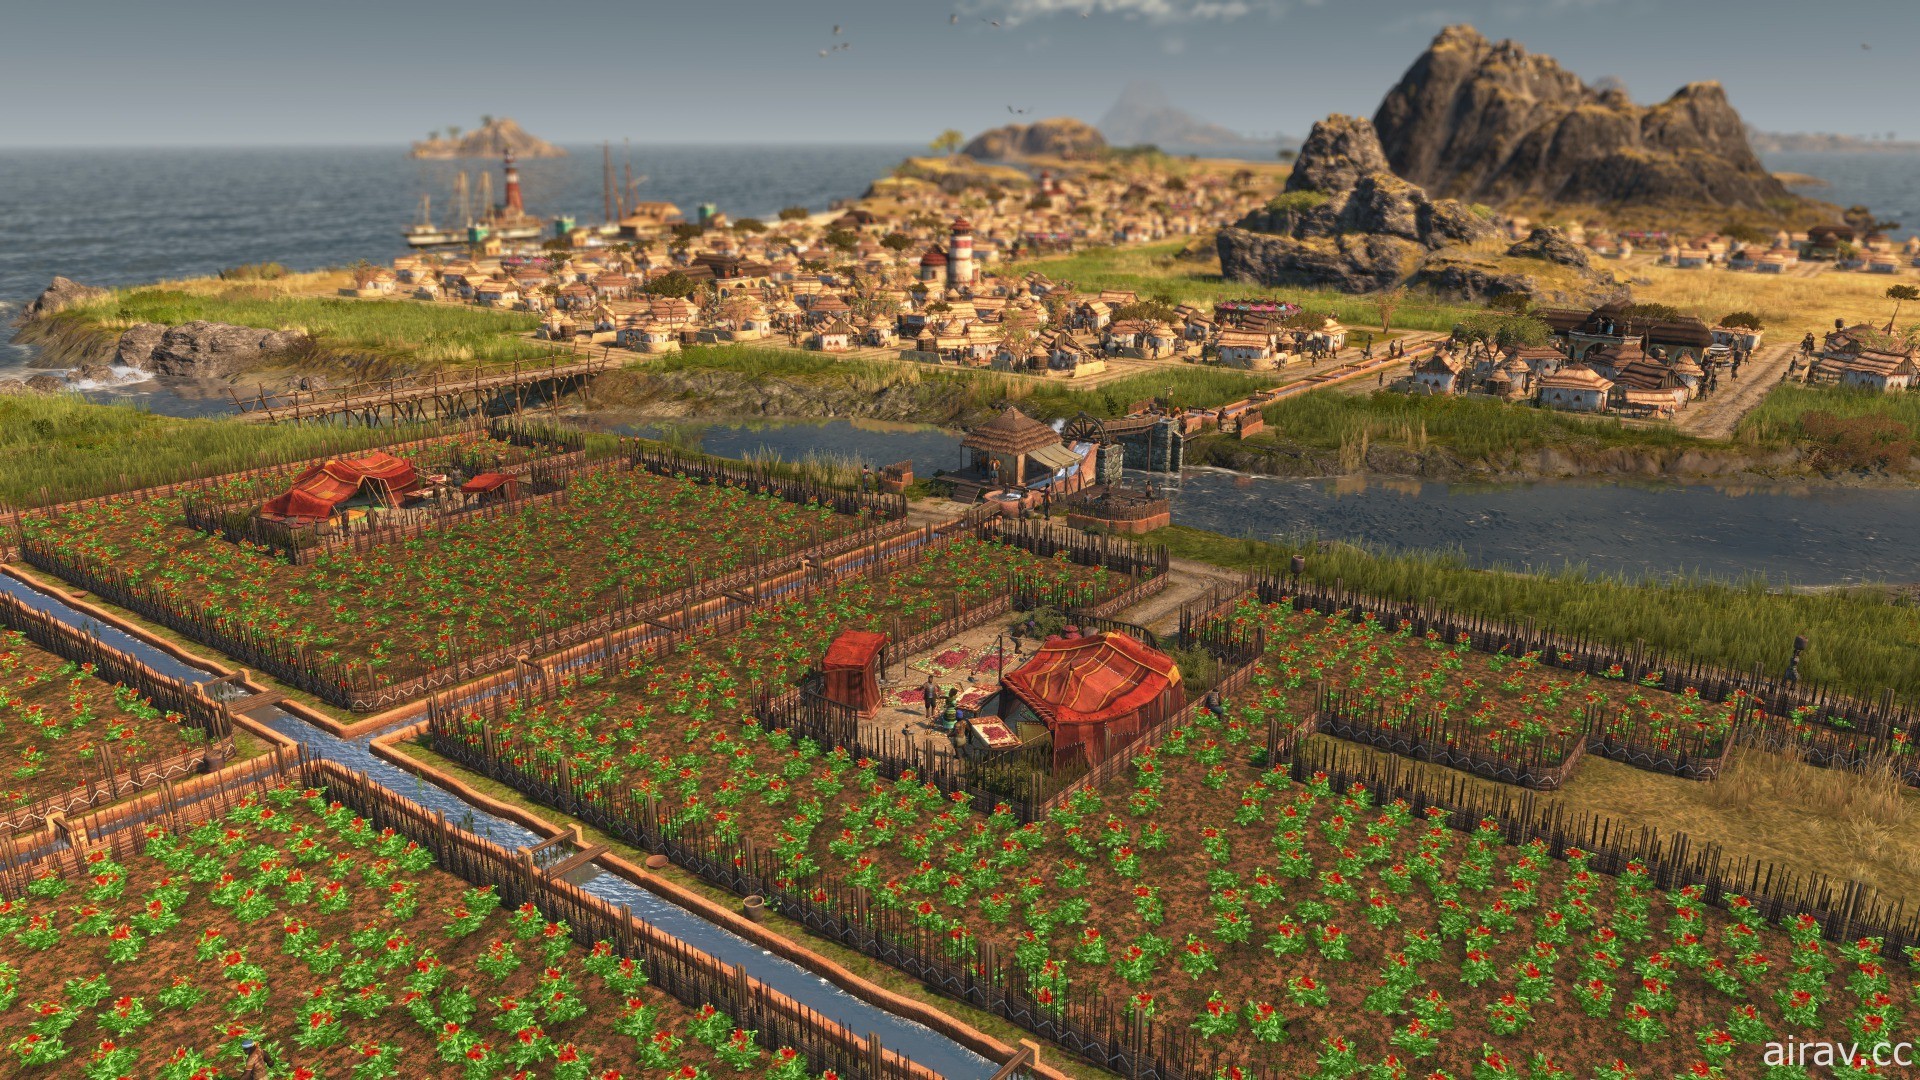 《美麗新世界 1800》新 DLC「獅子大地」已推出 前進新地區「安貝沙」體驗灌溉系統等